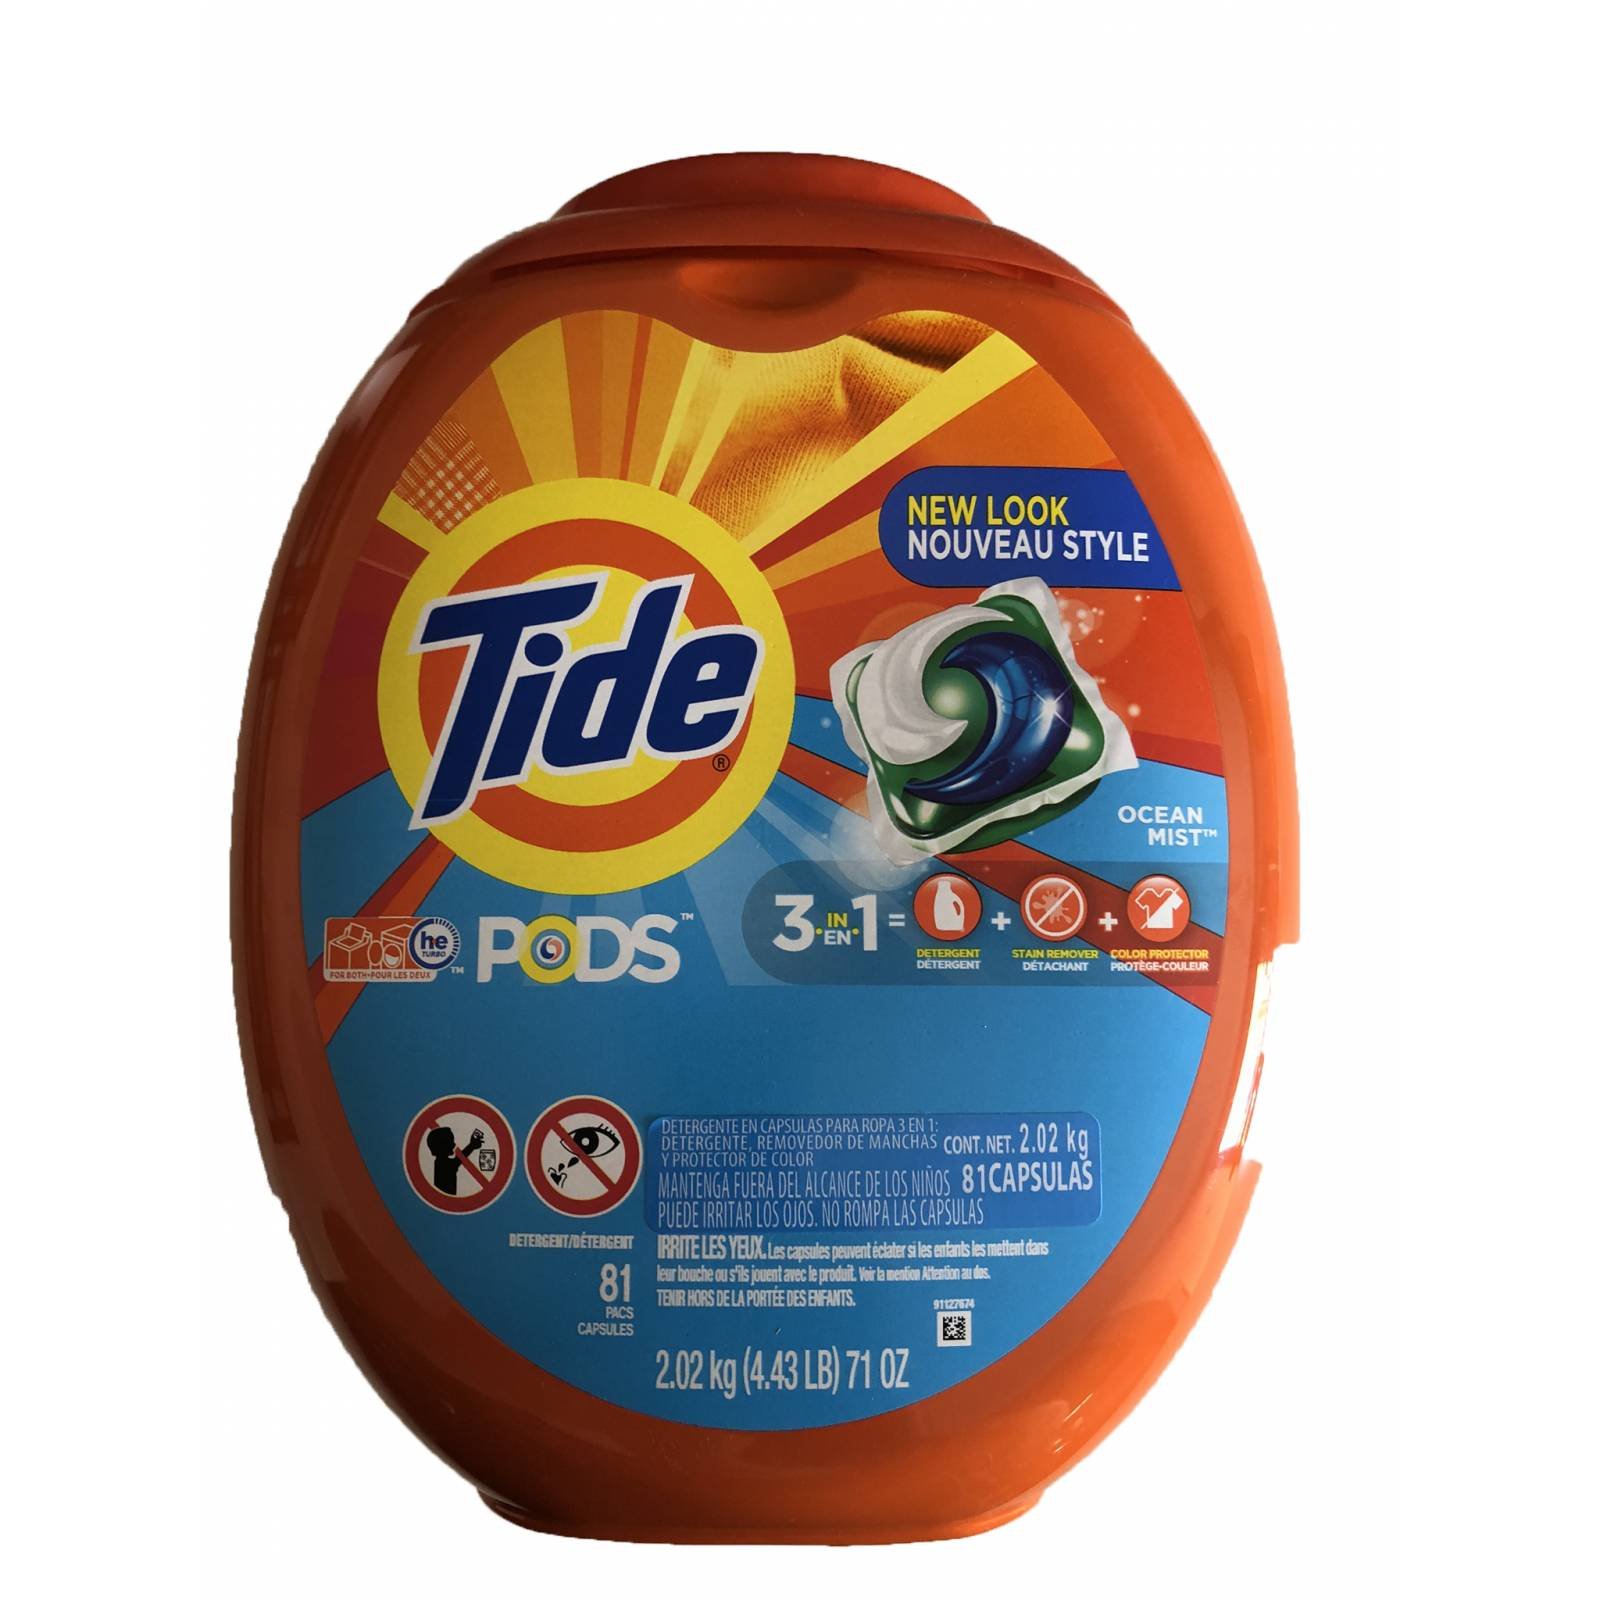 Tide Pods Capsulas para lavanderia ropa tela High Eficiency HE 2.02 Kilos 81 cargas, 3 en 1, Detergente, removedor de manchas, protege colores.